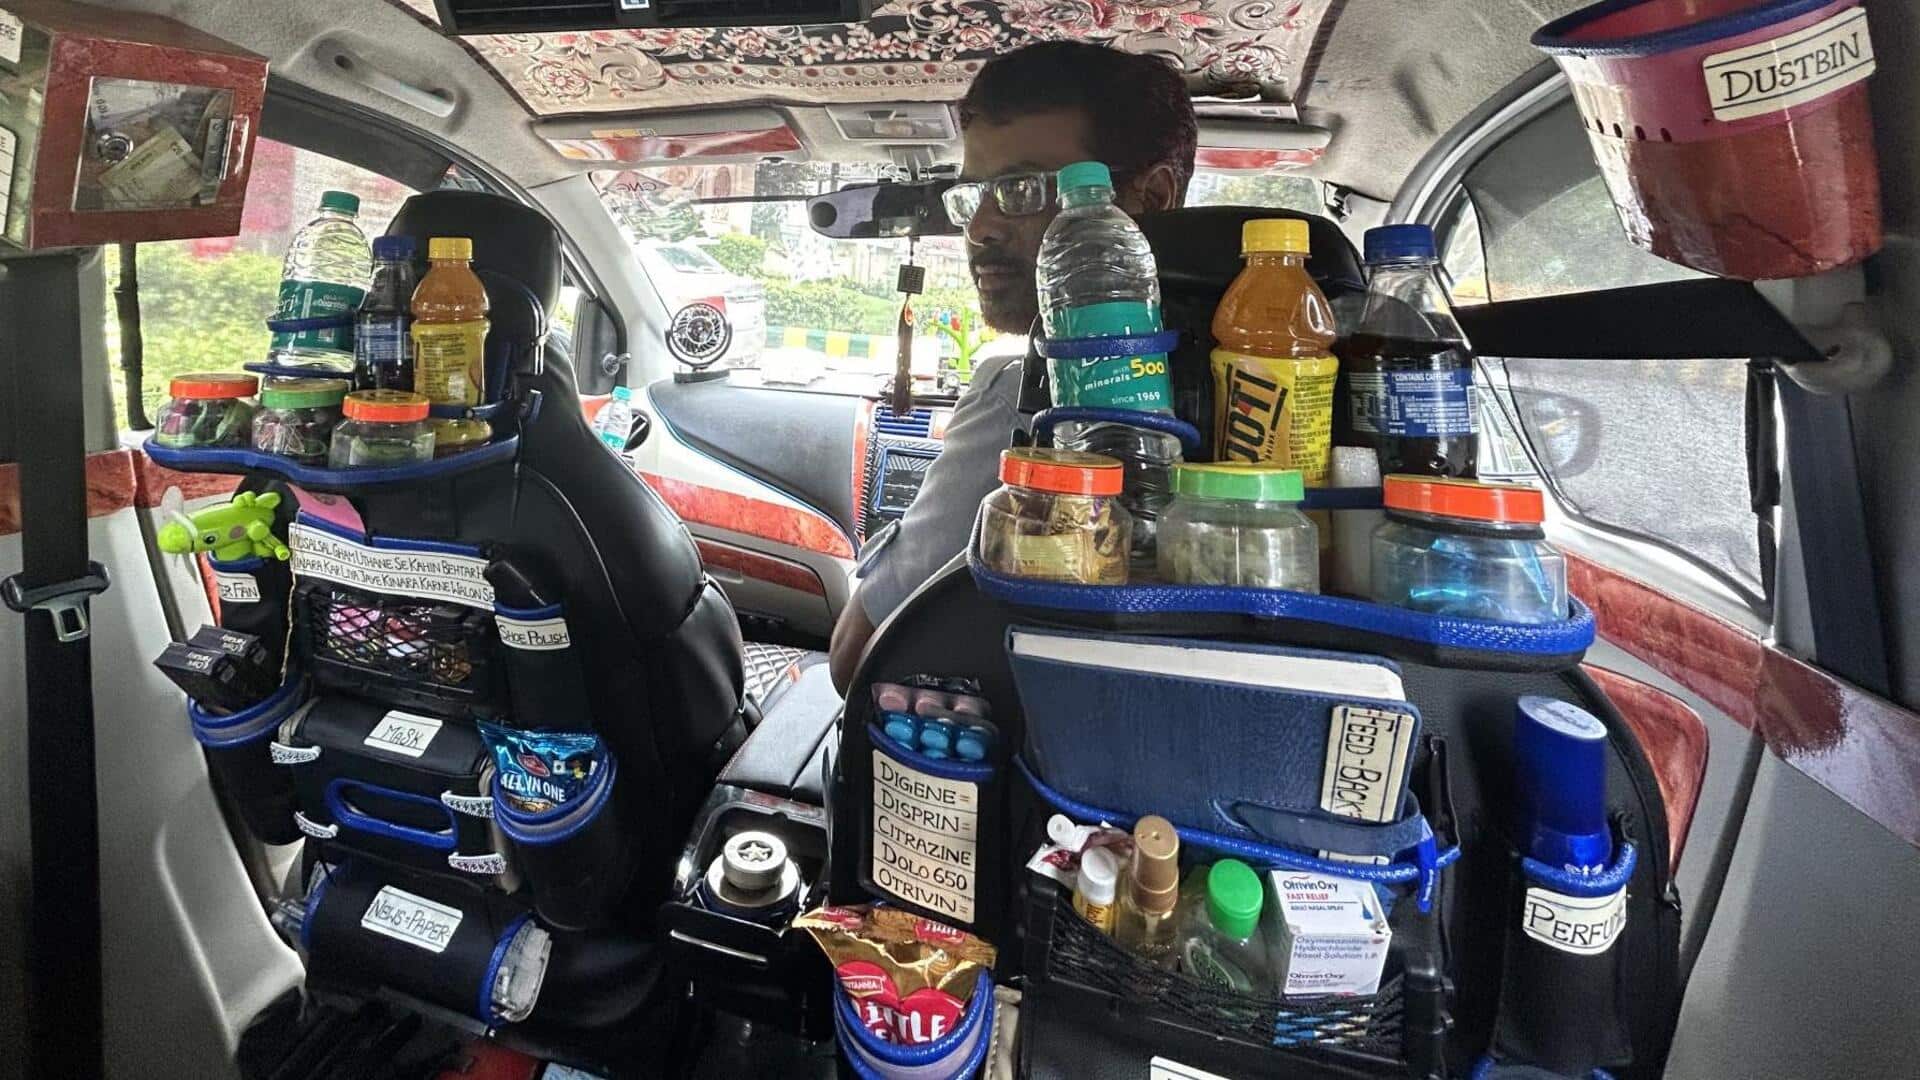 बुलंदशहर: उबर चालक की कैब में मेडिकल किट समेत यात्रियों की जरूरत का सारा सामान